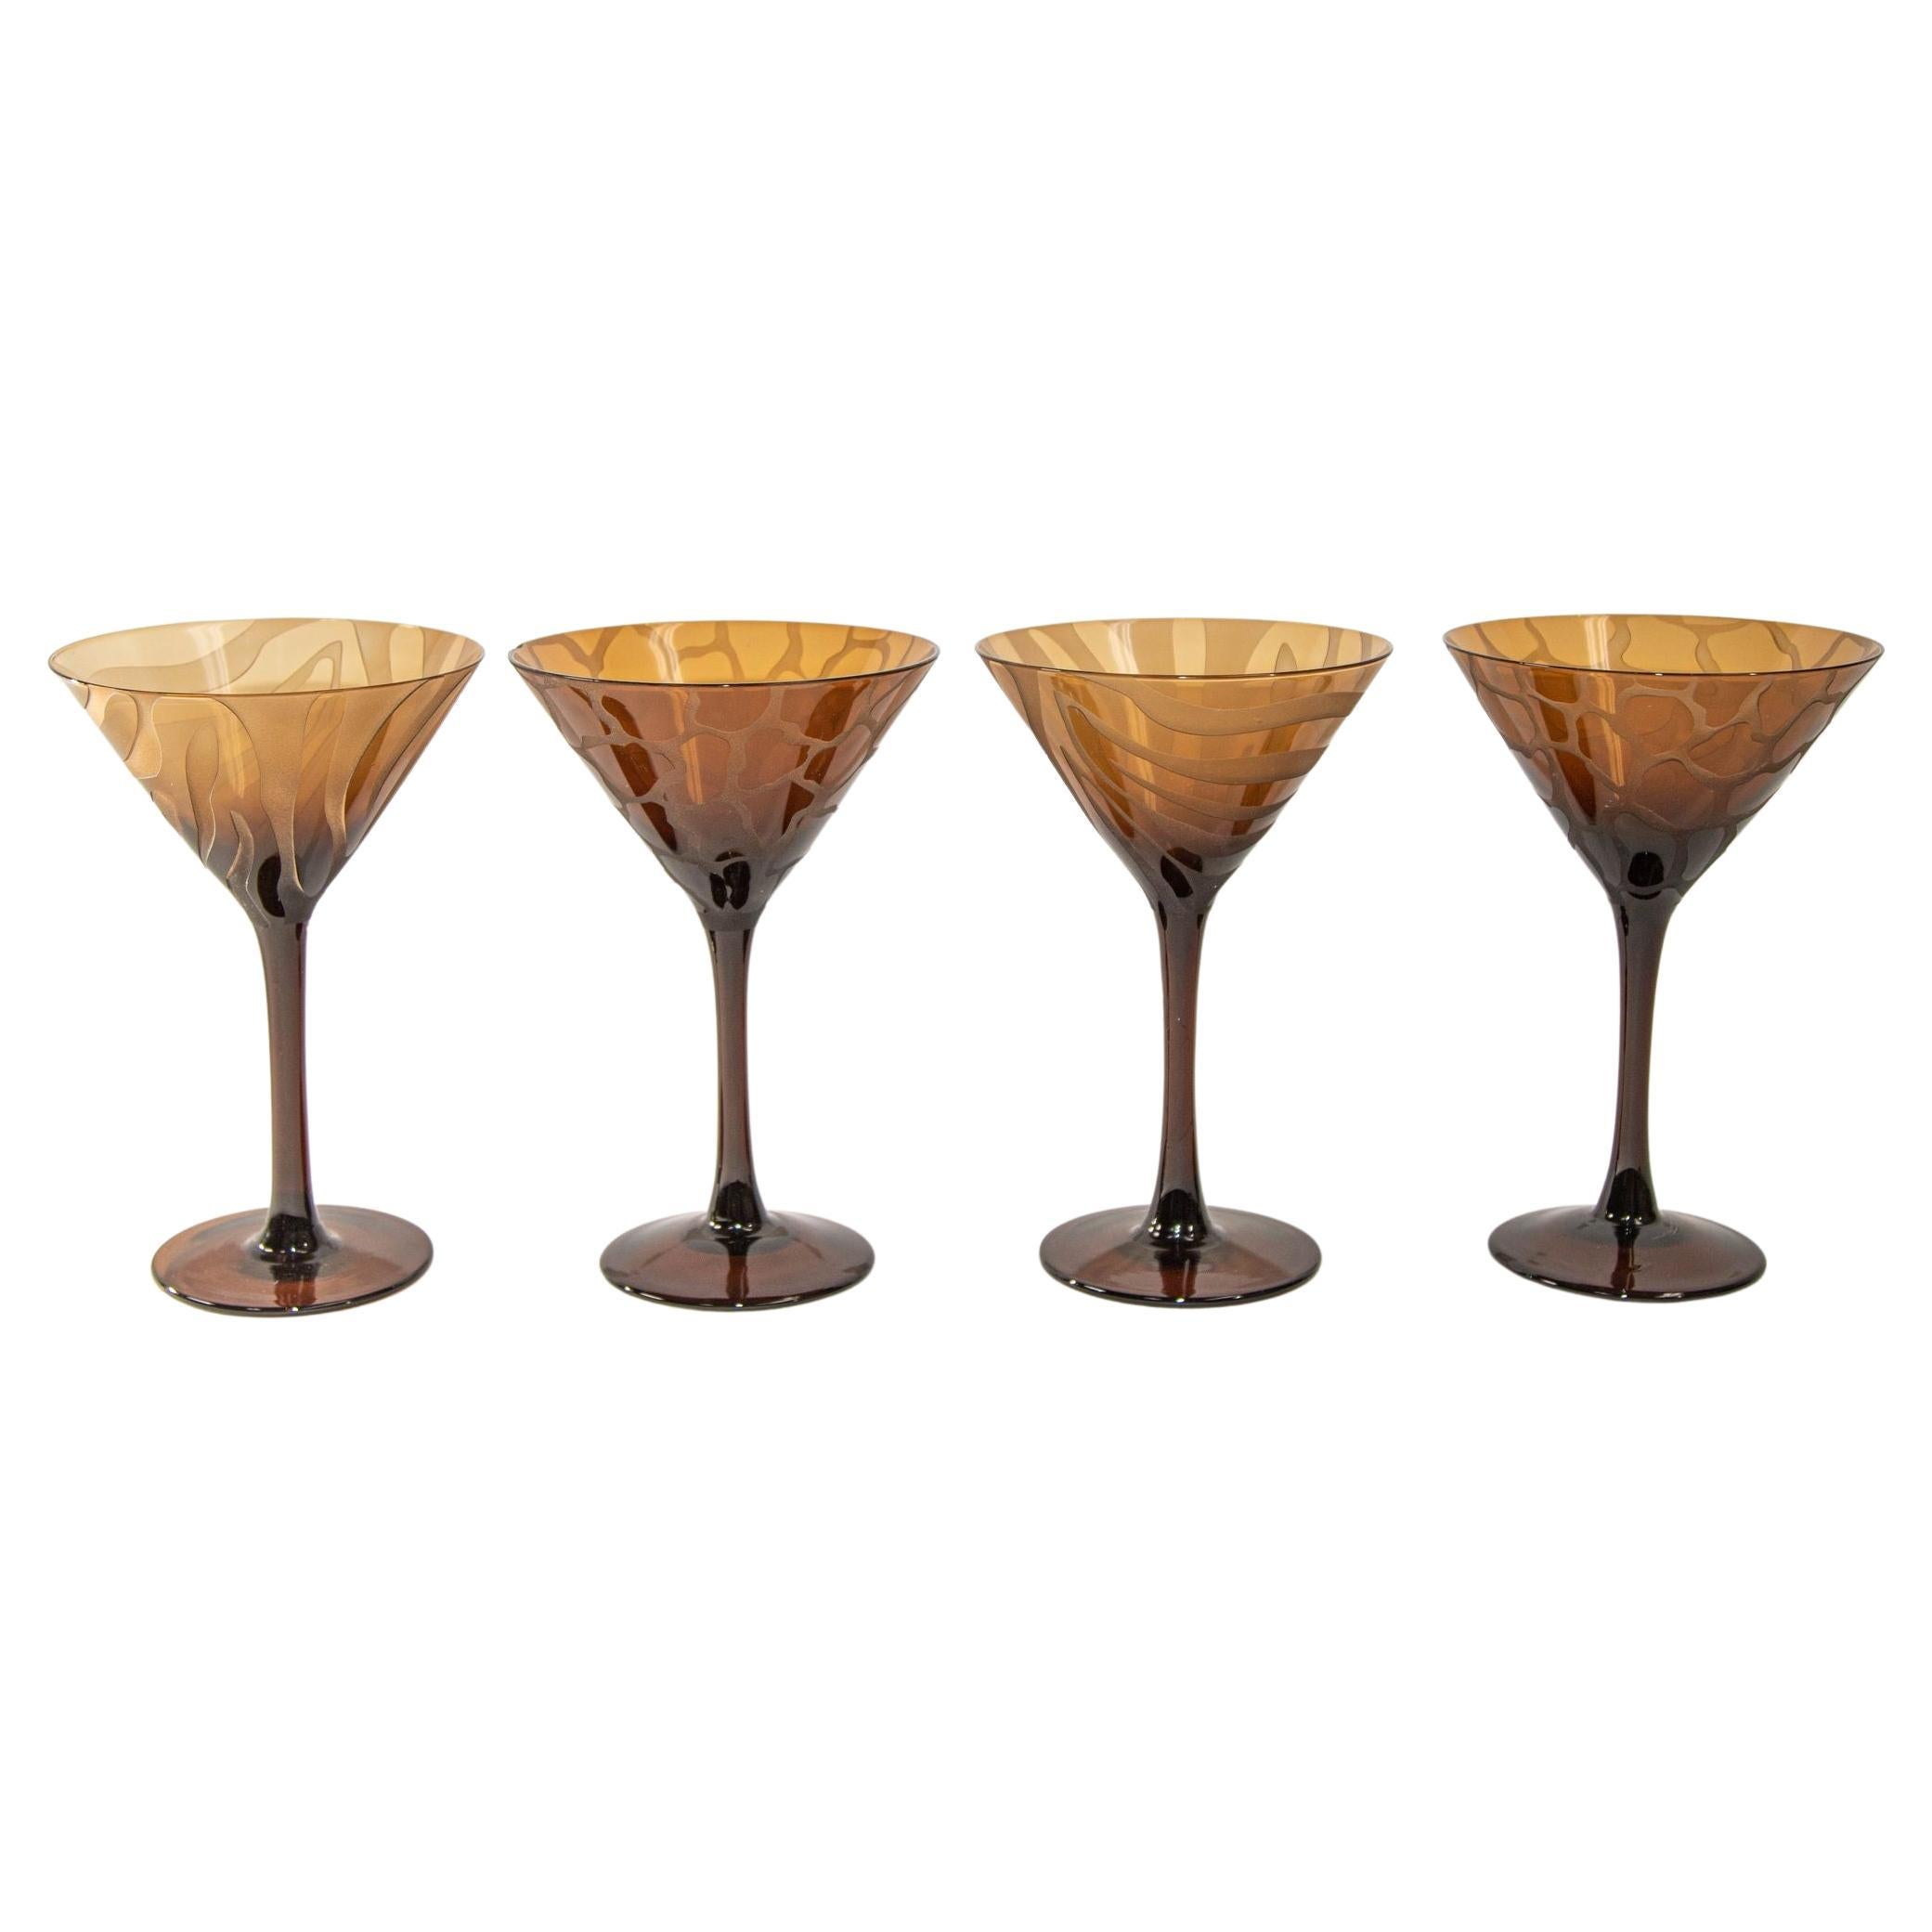 https://a.1stdibscdn.com/1990s-animal-print-etched-brown-stemmed-martini-glasses-vintage-barware-set-of-4-for-sale/f_9068/f_352043721689197555873/f_35204372_1689197556459_bg_processed.jpg